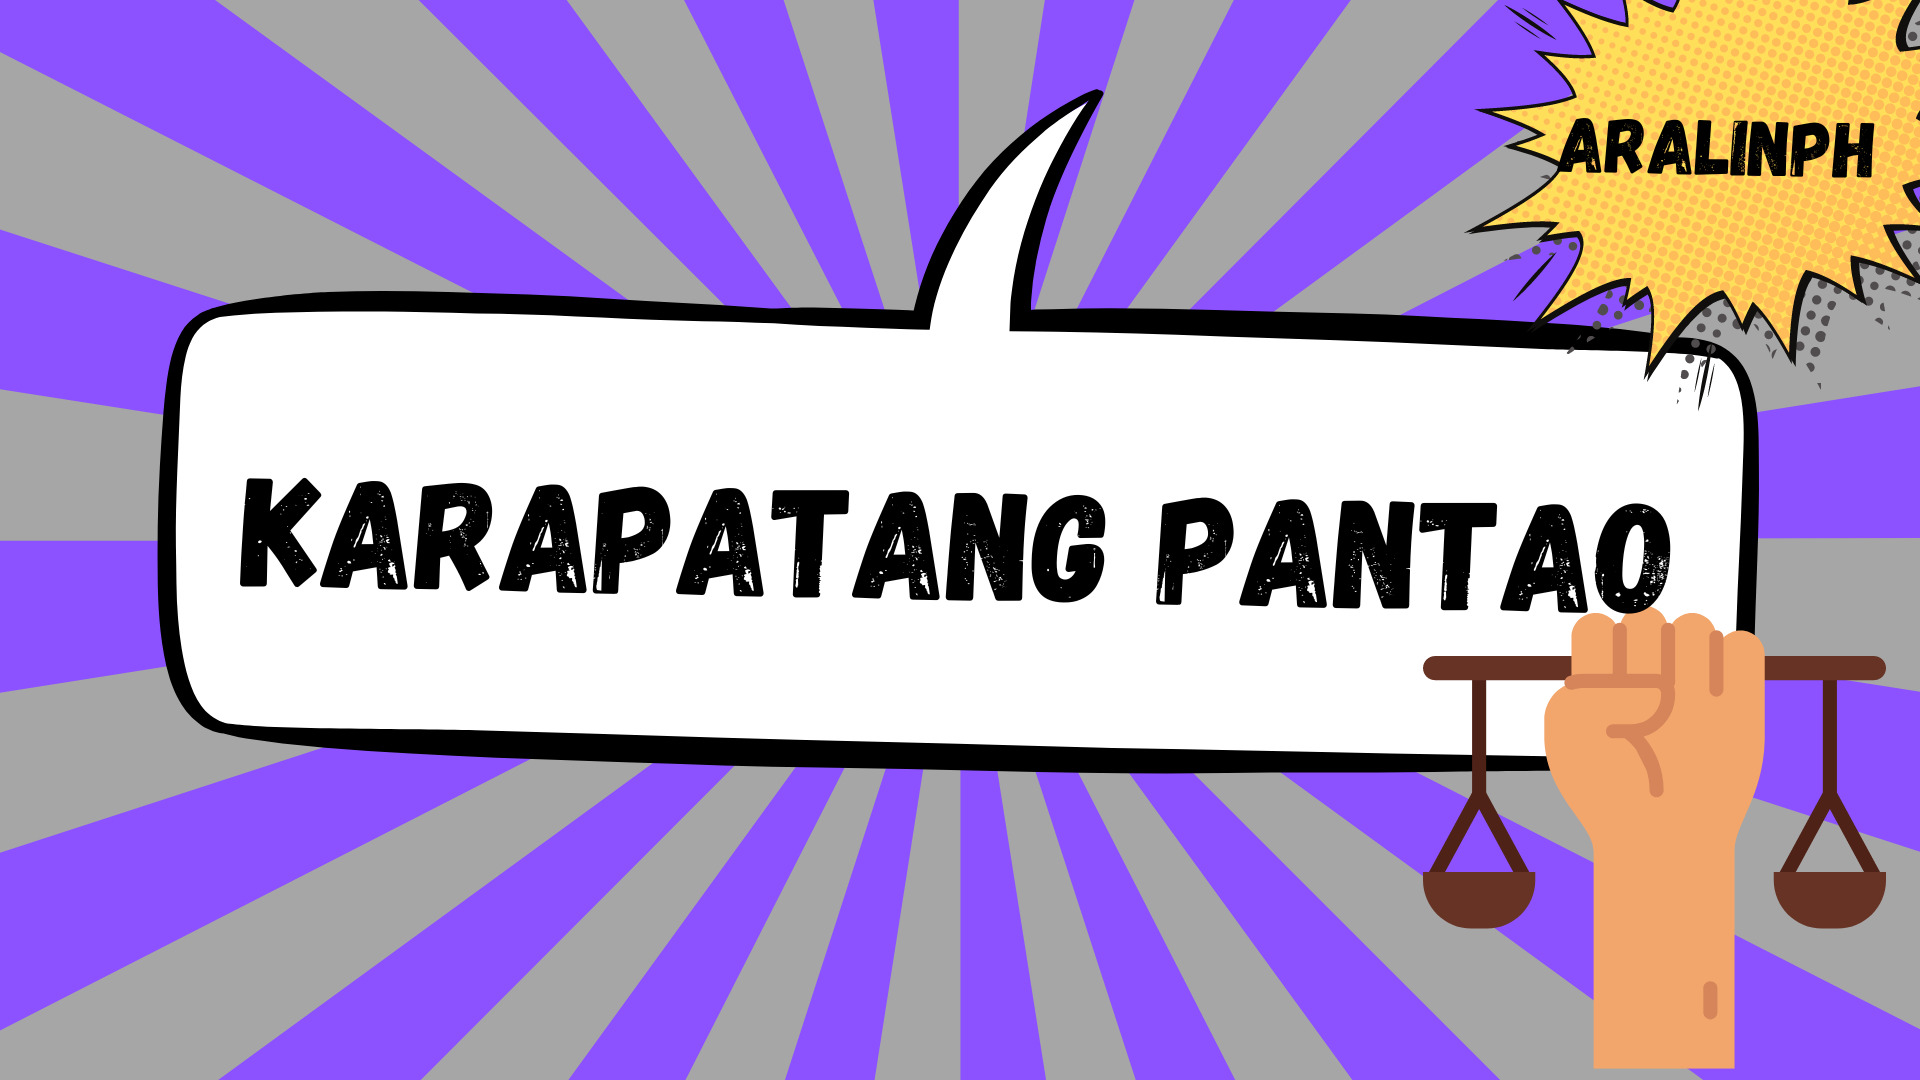 karapatang pantao essay 200 words